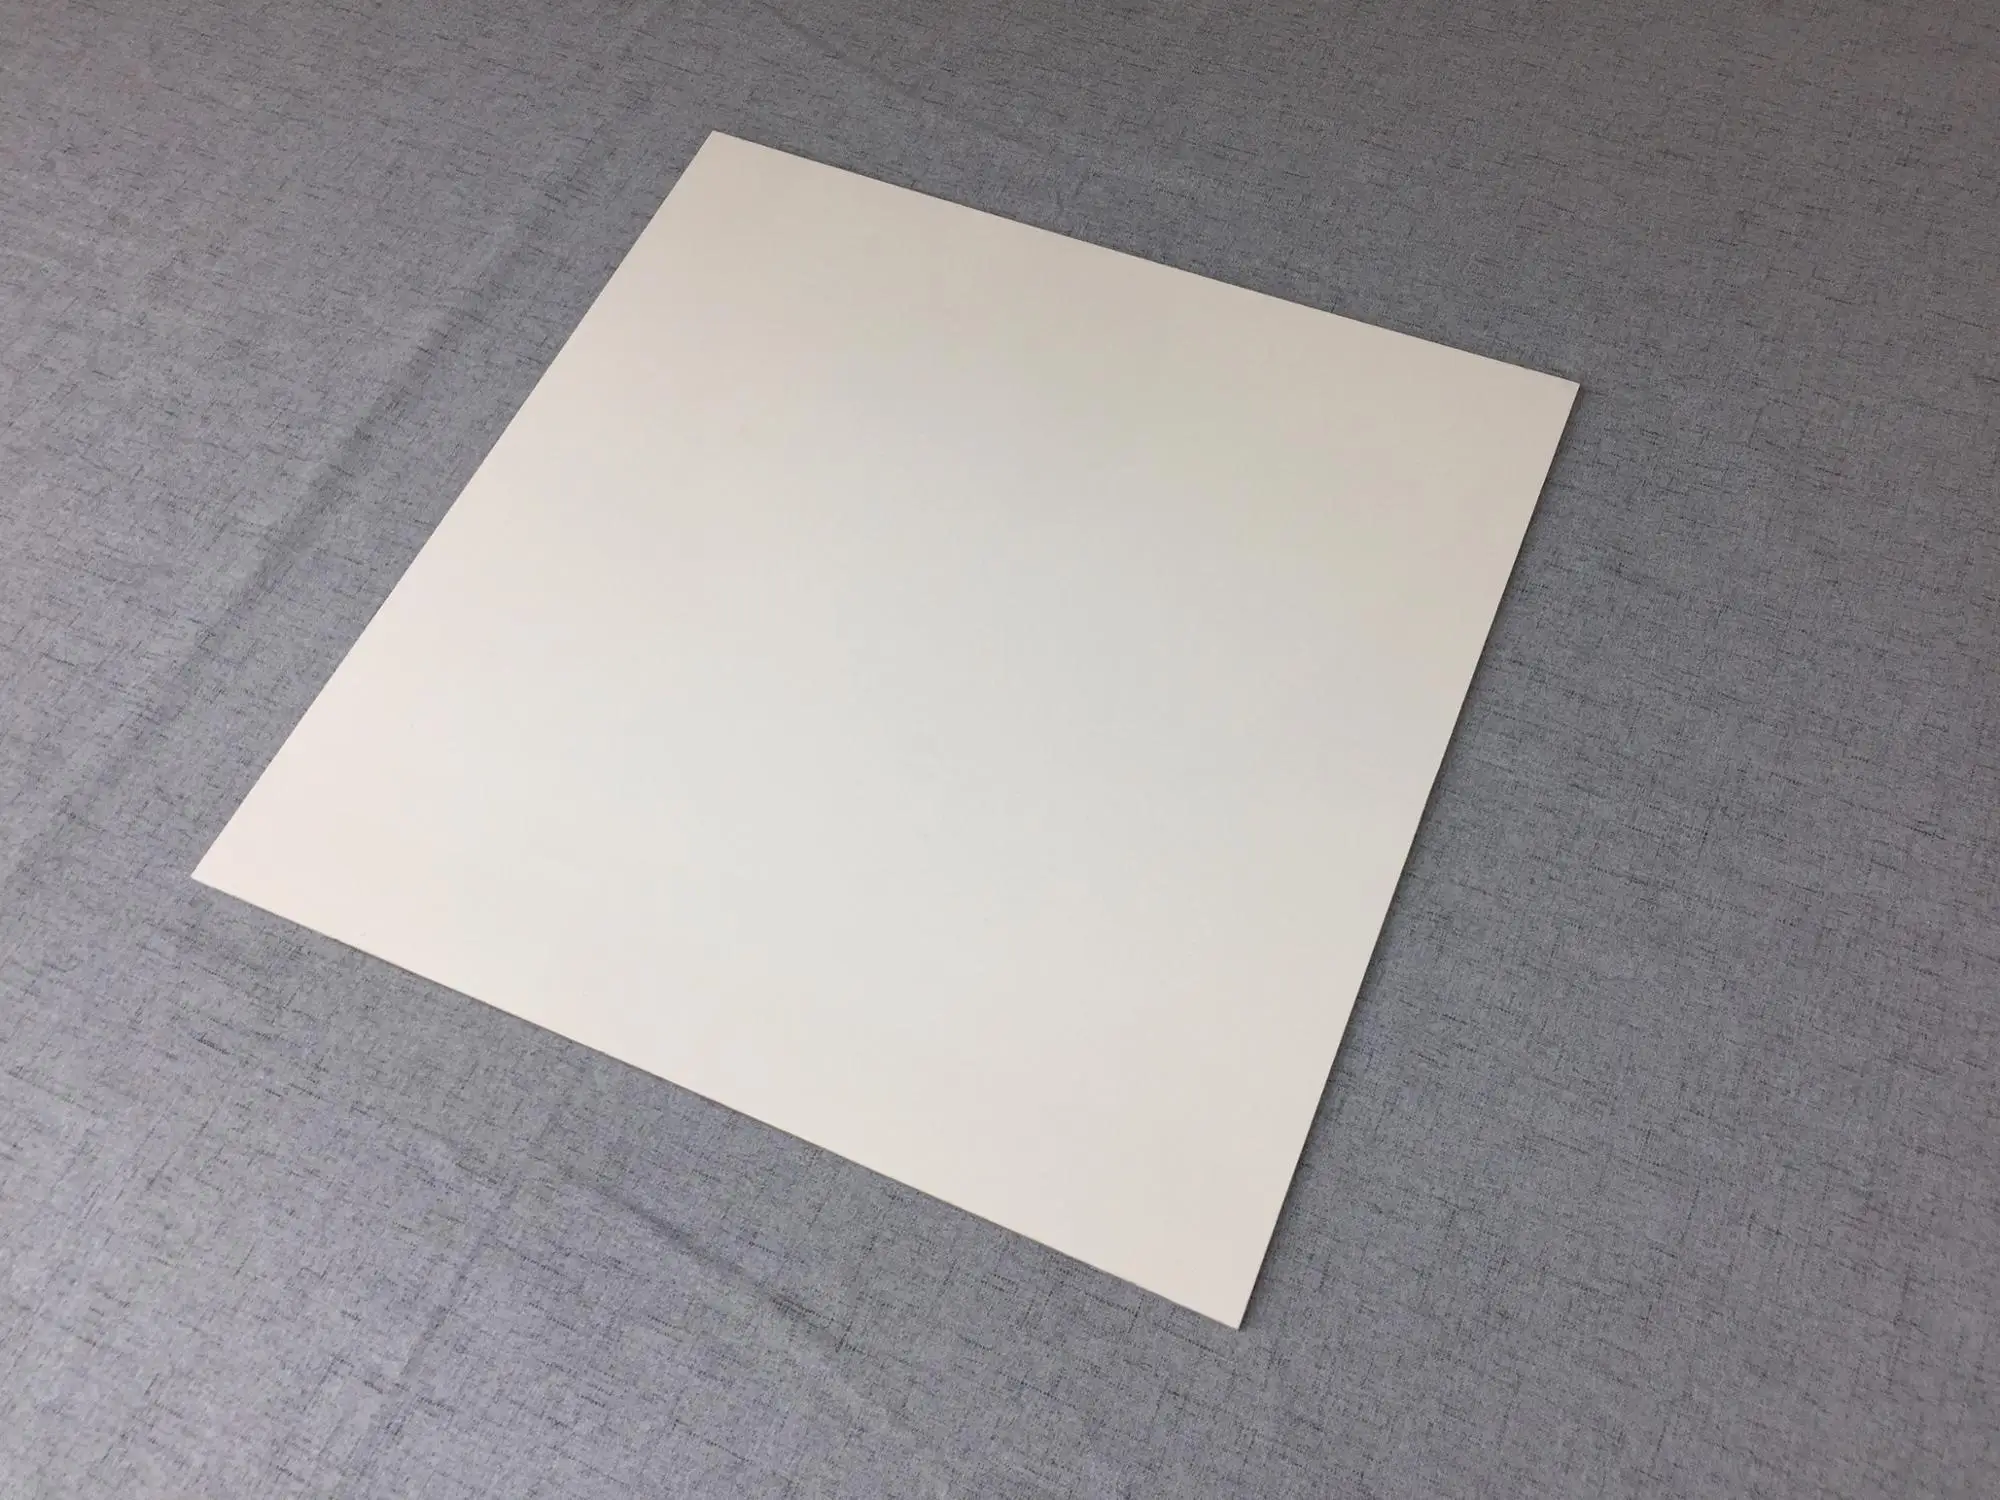 亚洲流行低价纯白色室内 800 x 800毫米瓷砖